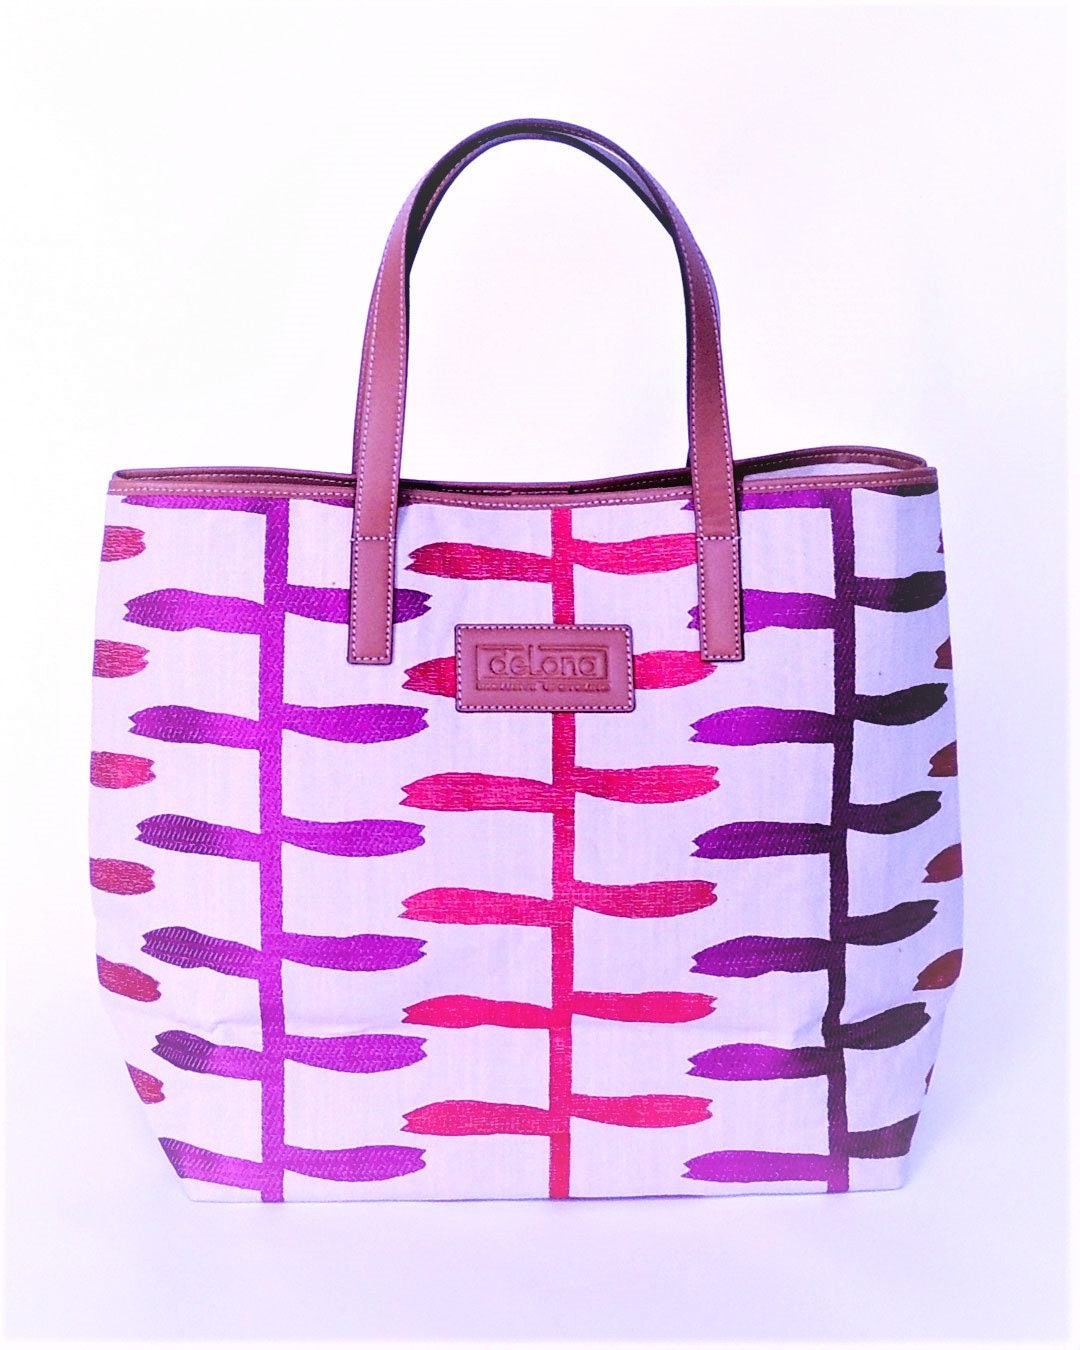 Tote Bag - T003 - Shopping Bag confeccionado con lino bordado, yute y piel